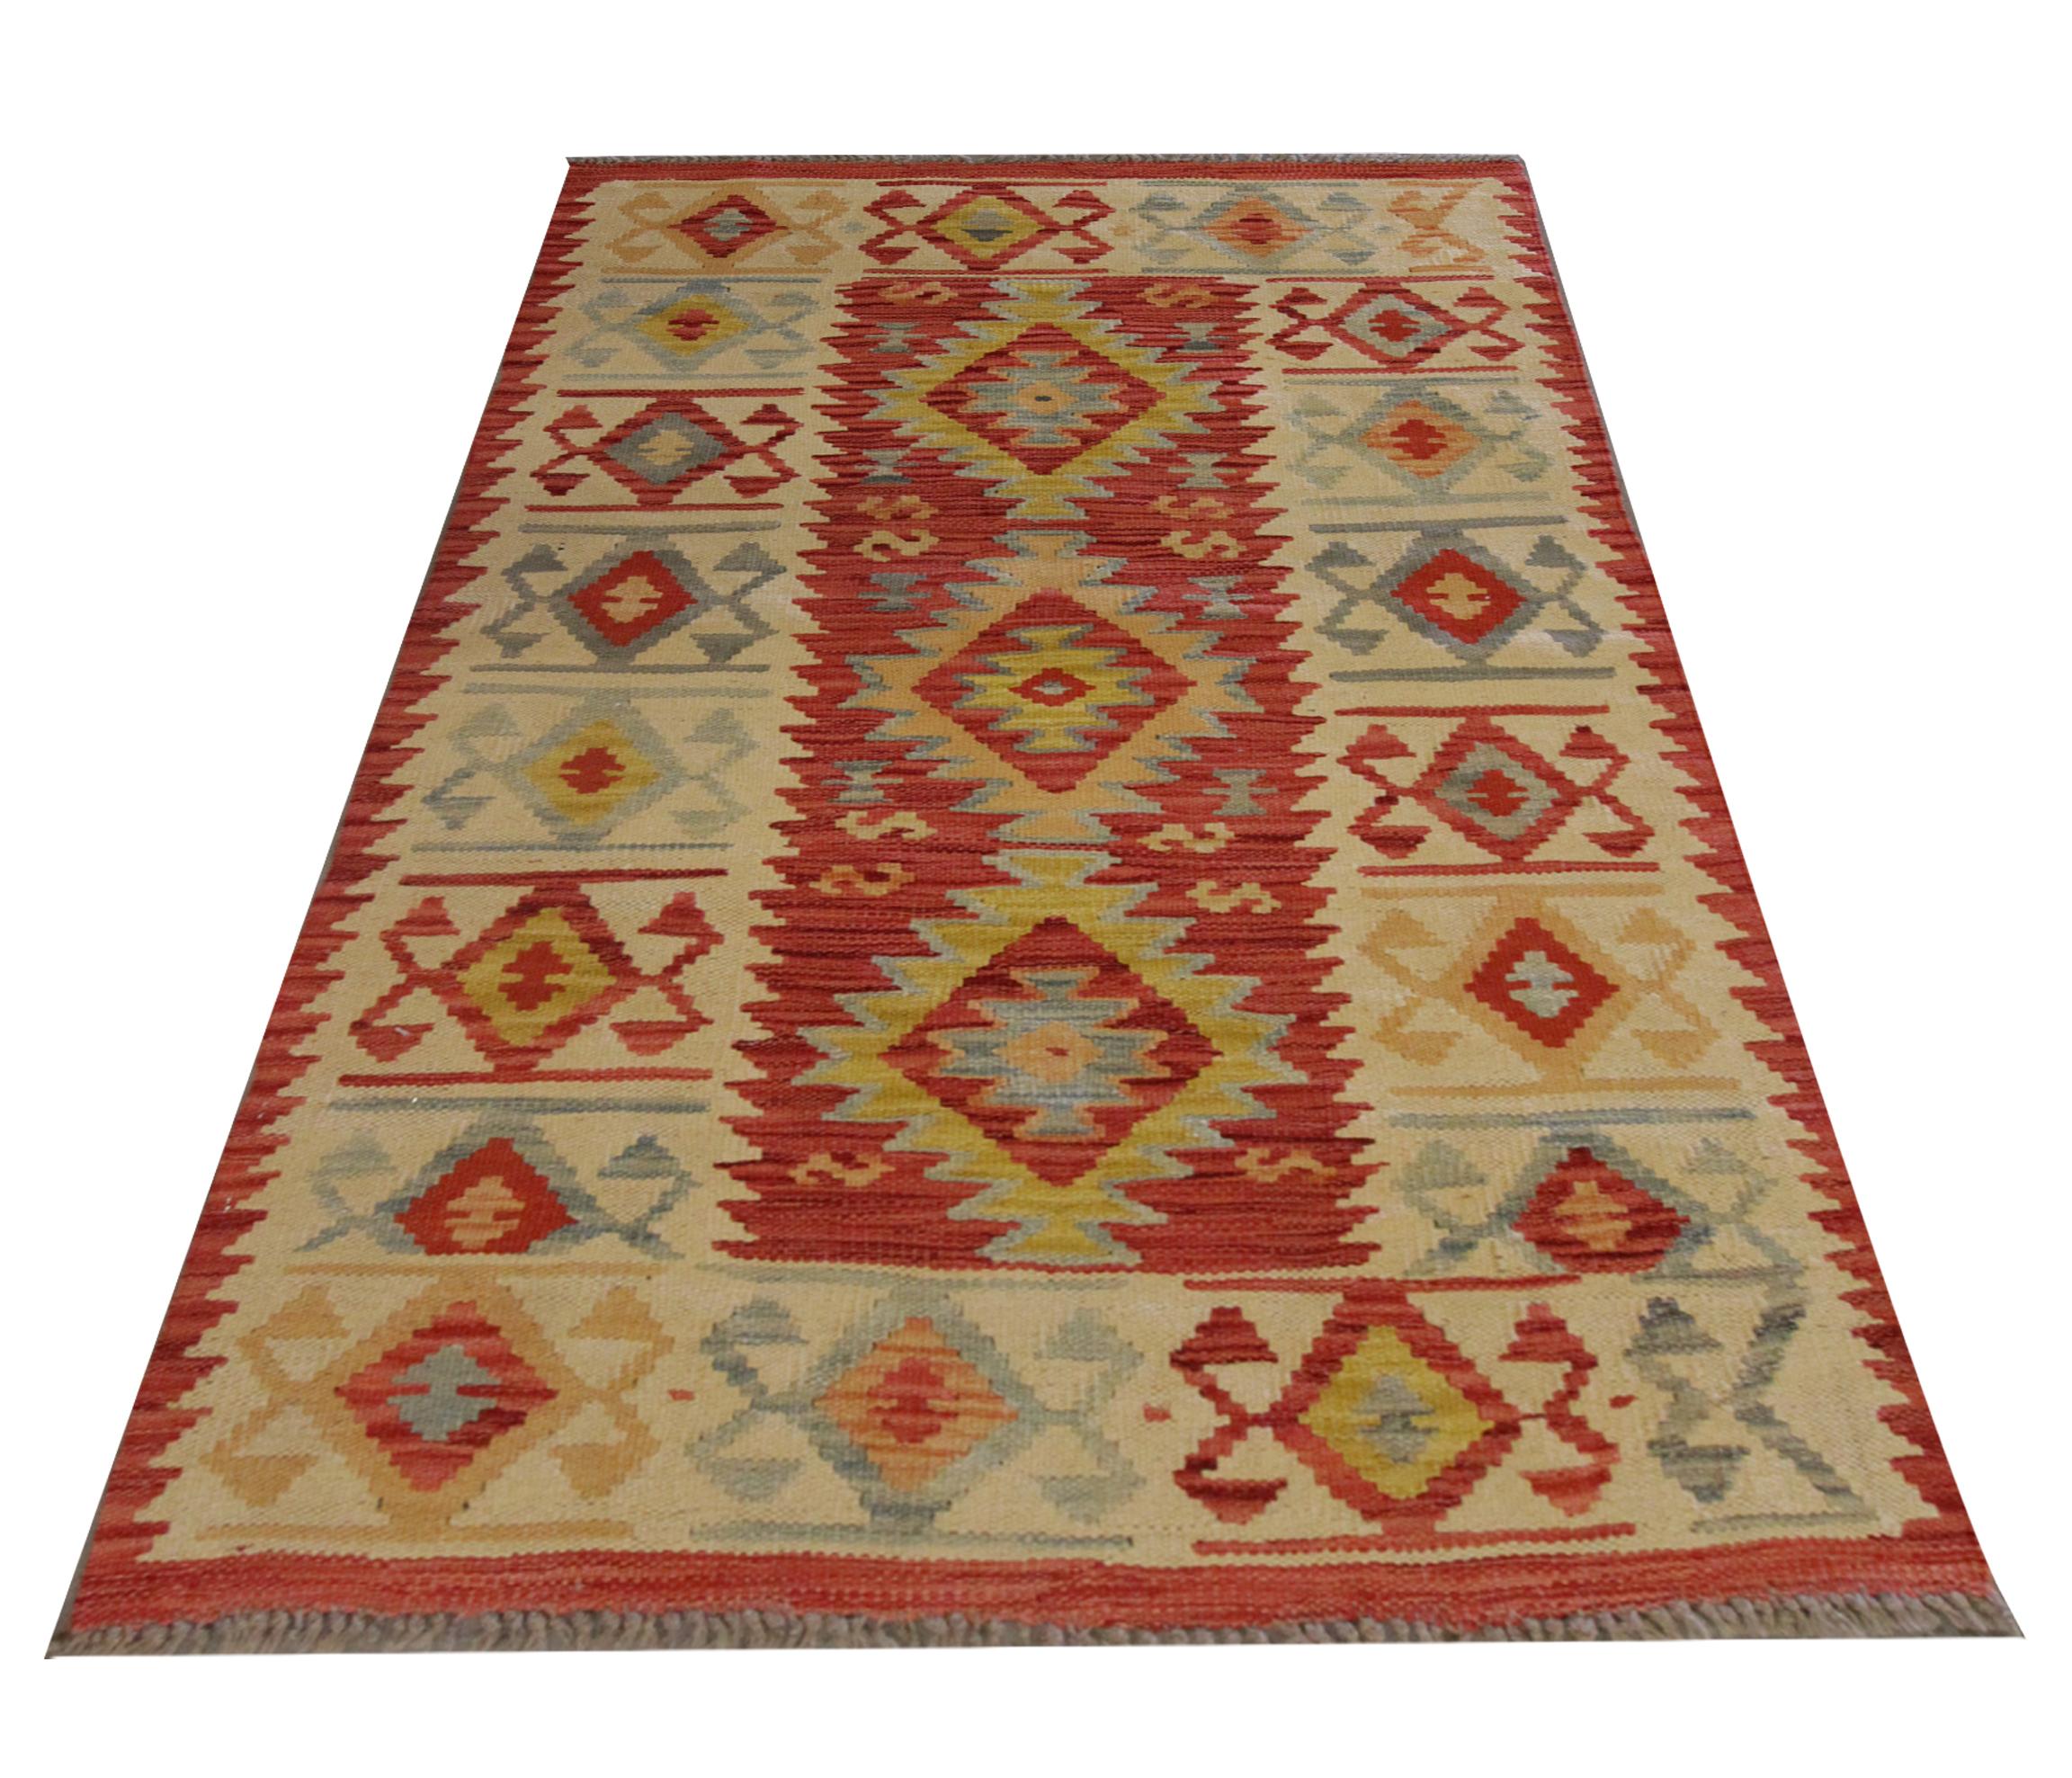 Ce tapis en laine rouge riche est un Rug & Kilim tissé à la main au début du 21e siècle. Le motif présente un trio de motifs géométriques tissés en jaune, orange et gris sur un riche champ rouge. Le tout est entouré d'une bordure crème avec des